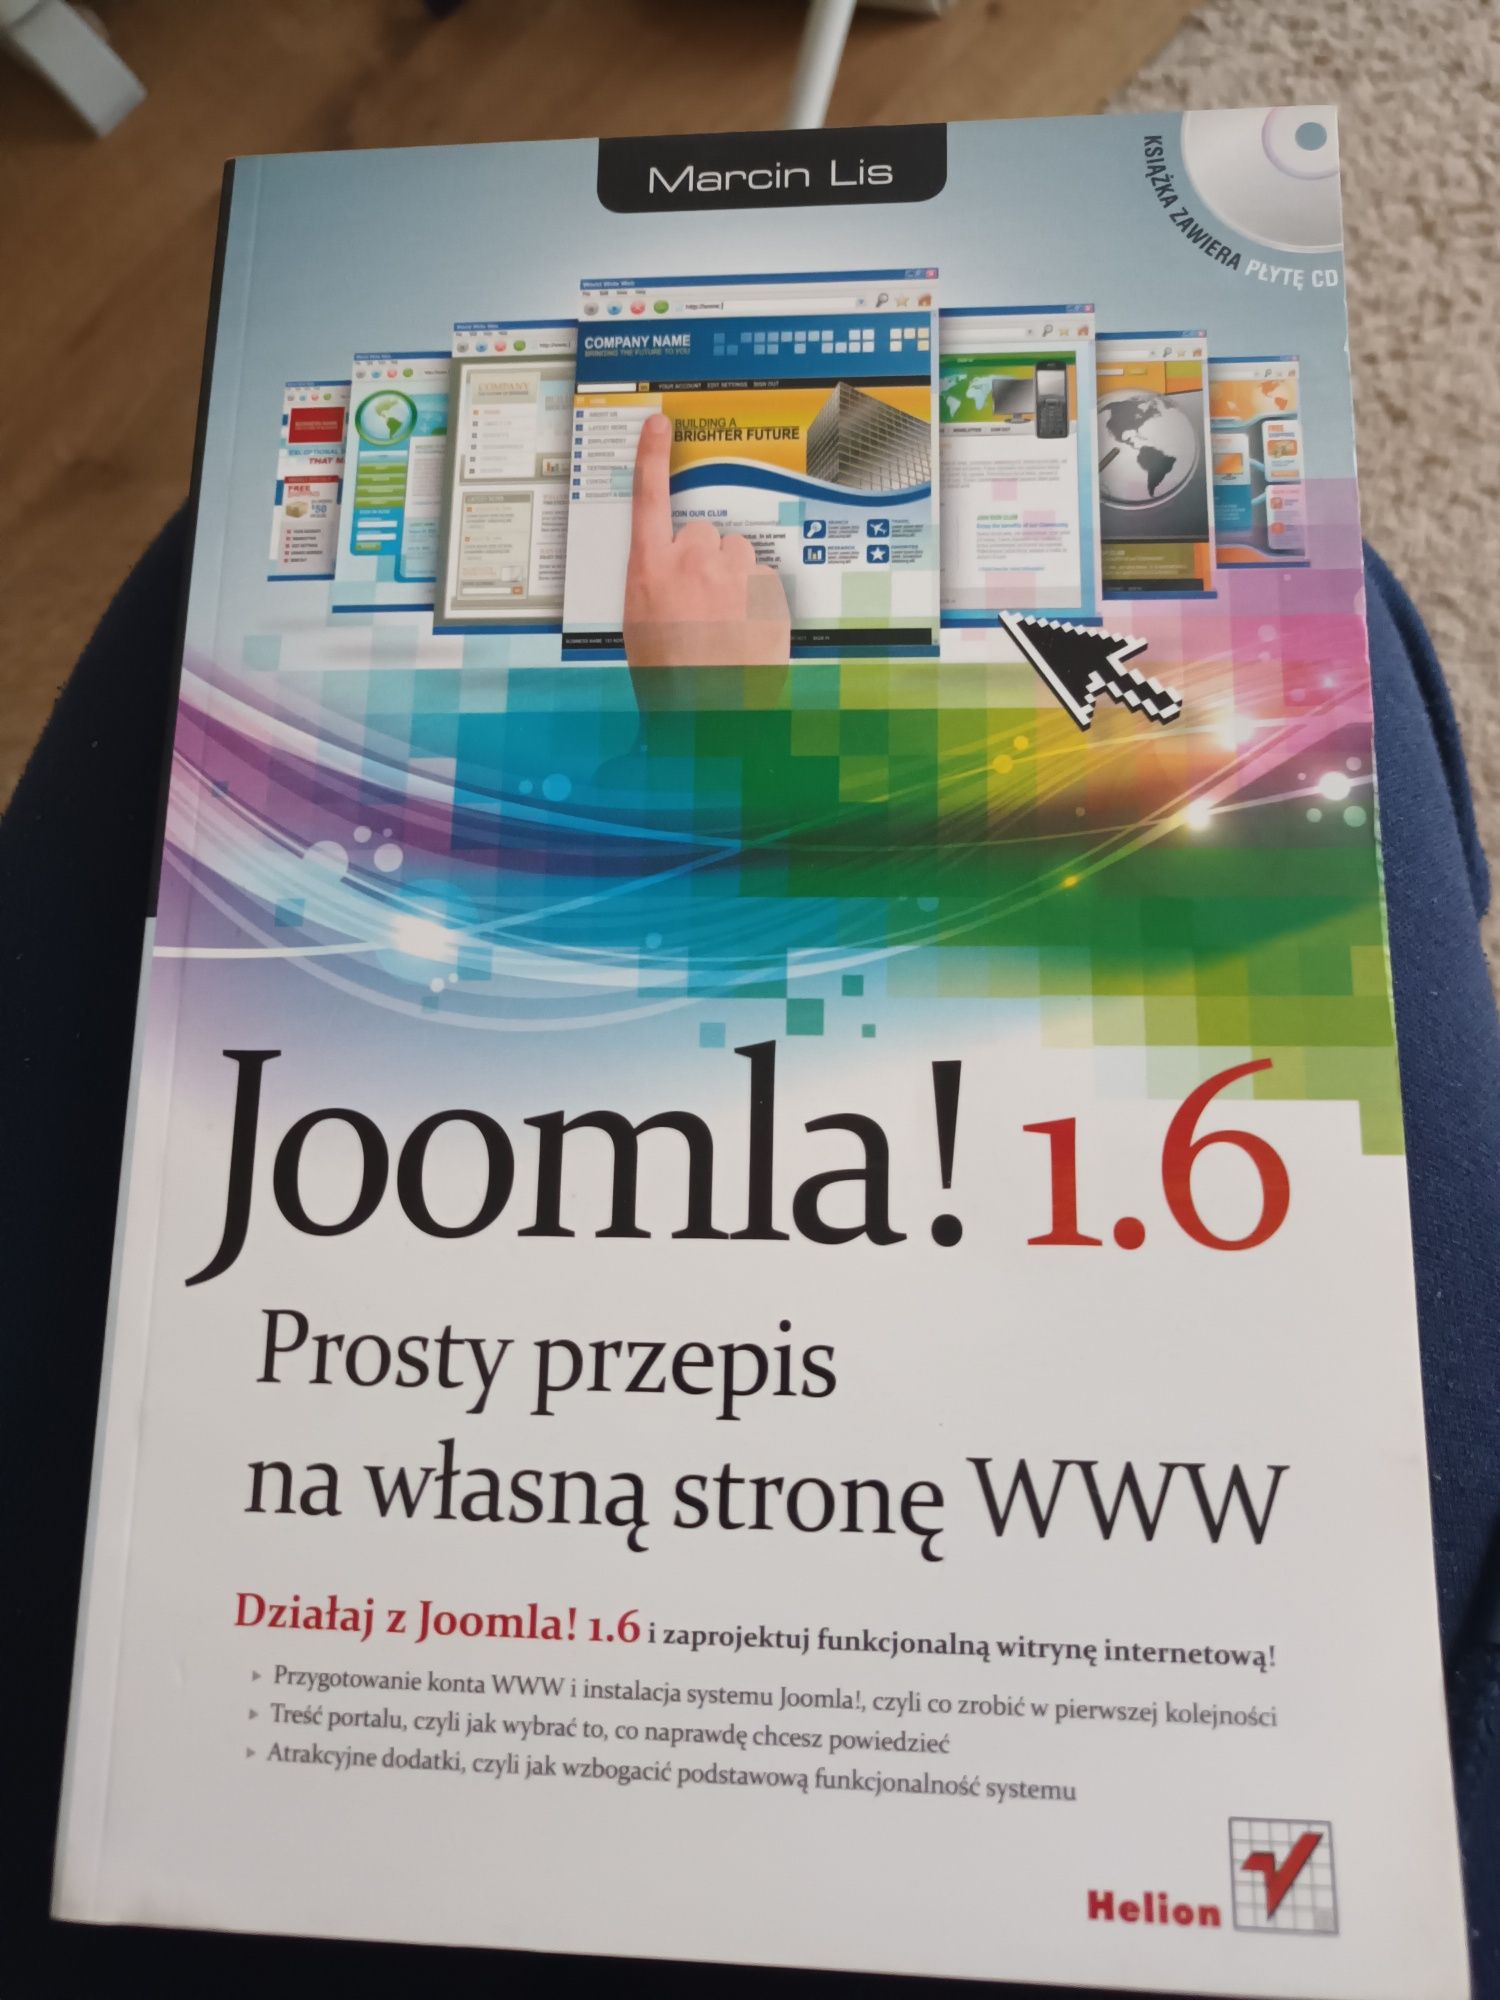 Joomla! 1.6 tworzenie stron